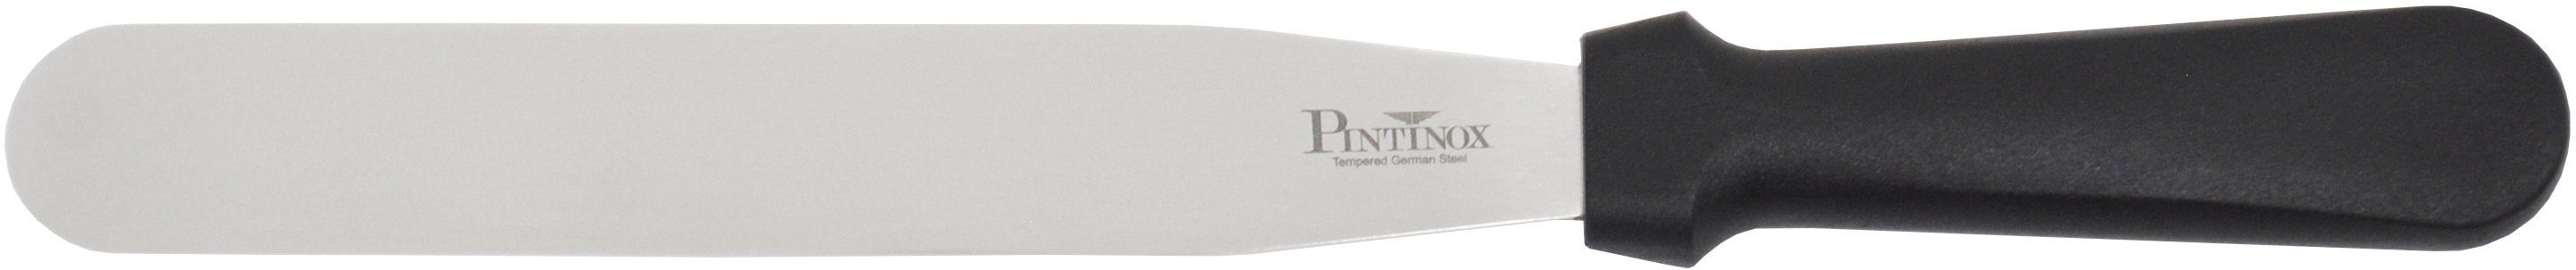 PINTINOX Streichpalette Professional, Spatel Spatel 1 1 cm 10,5cm, Edelstahl, spülmaschinengeeignet, 25,5